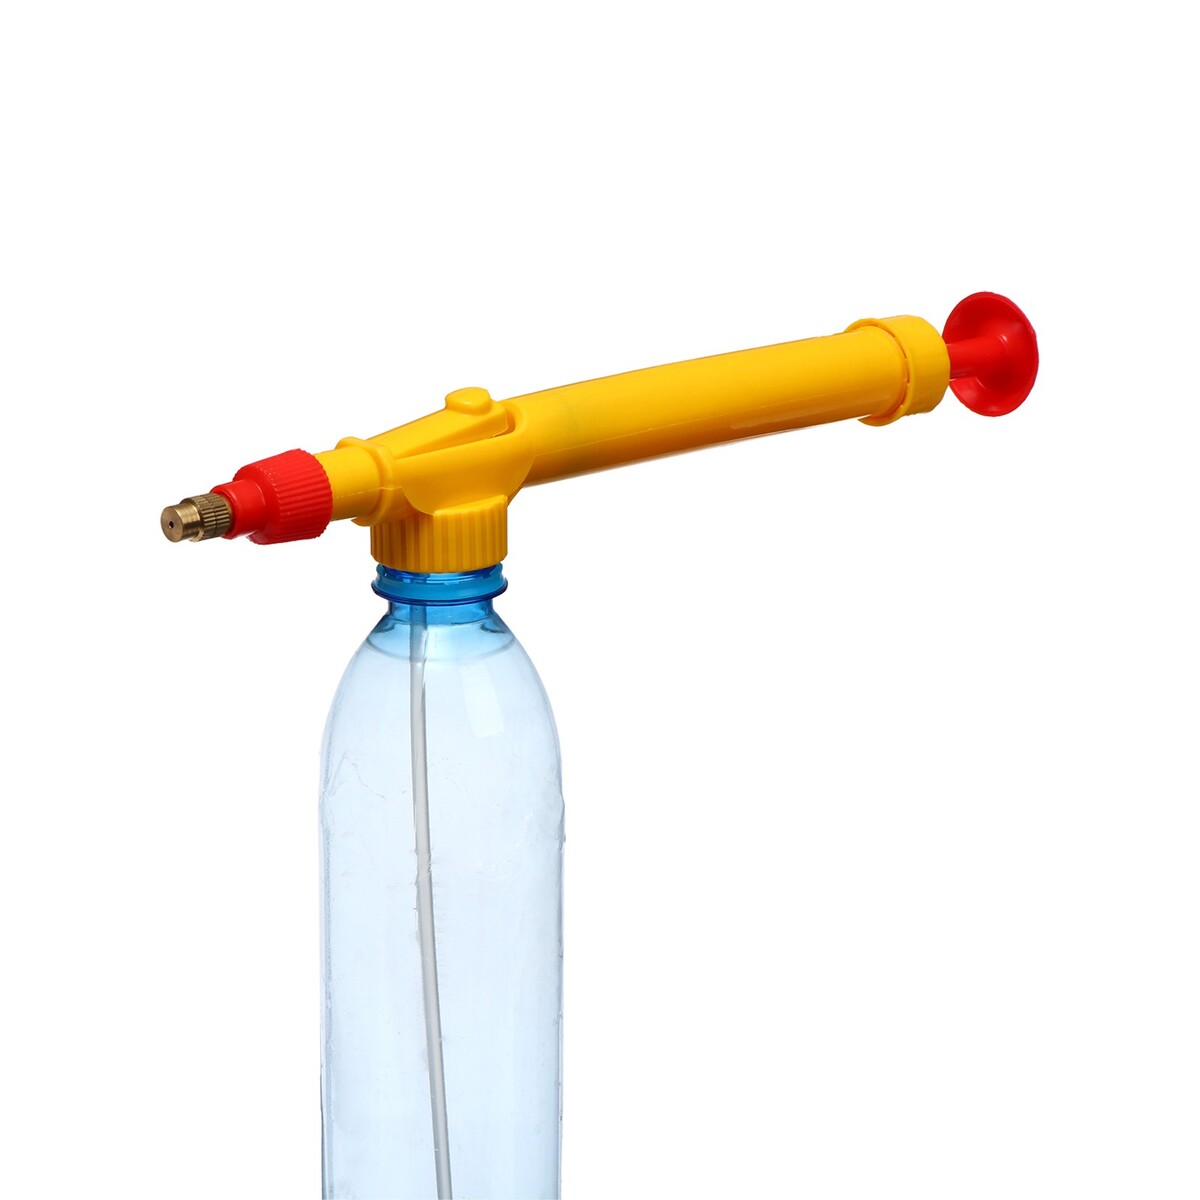 Опрыскиватель ручной, длина 29 см, с резьбой под пульверизатор/бутылку, пластик отвод стальной крутоизогнутый с резьбой 1 1 4